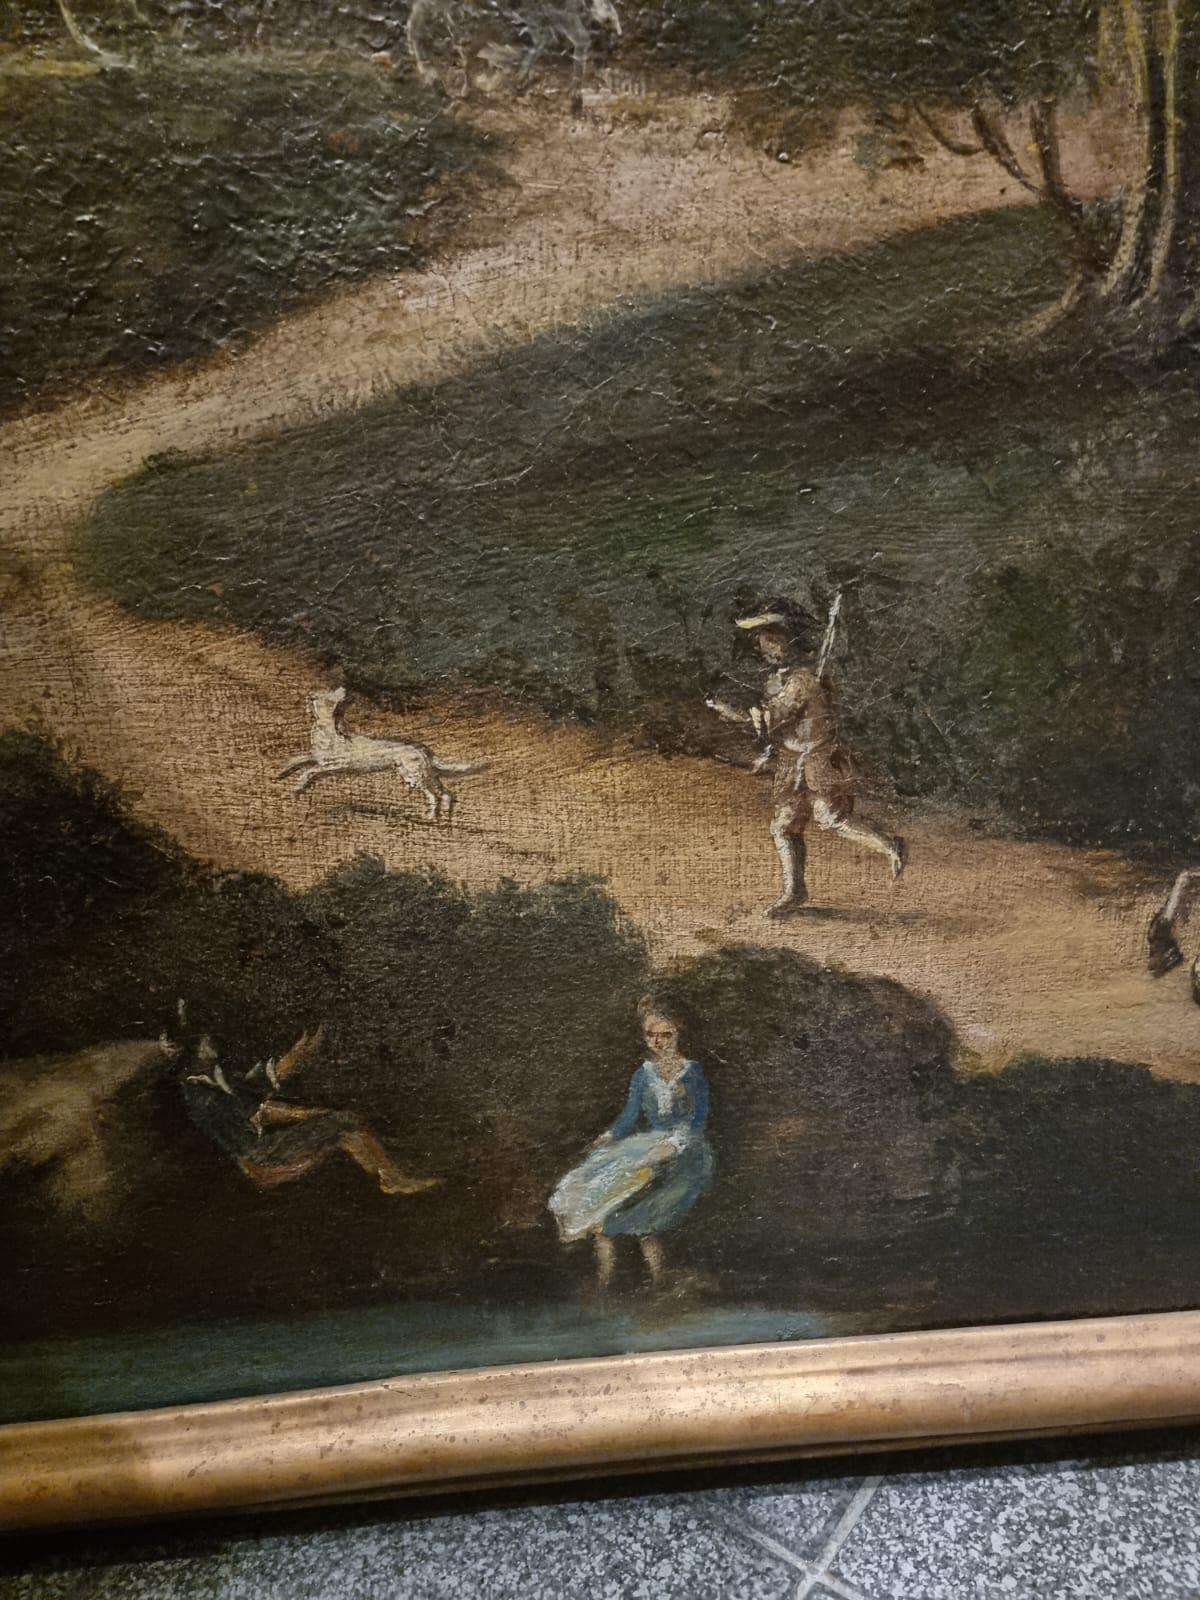 Belle peinture à l'huile sur toile représentant un paysage avec des personnages et des carrosses. Vénétie, XVIIIe siècle.

L'arrière-plan du tableau est dominé par un paysage vénitien pittoresque avec des collines et des arbres qui créent une